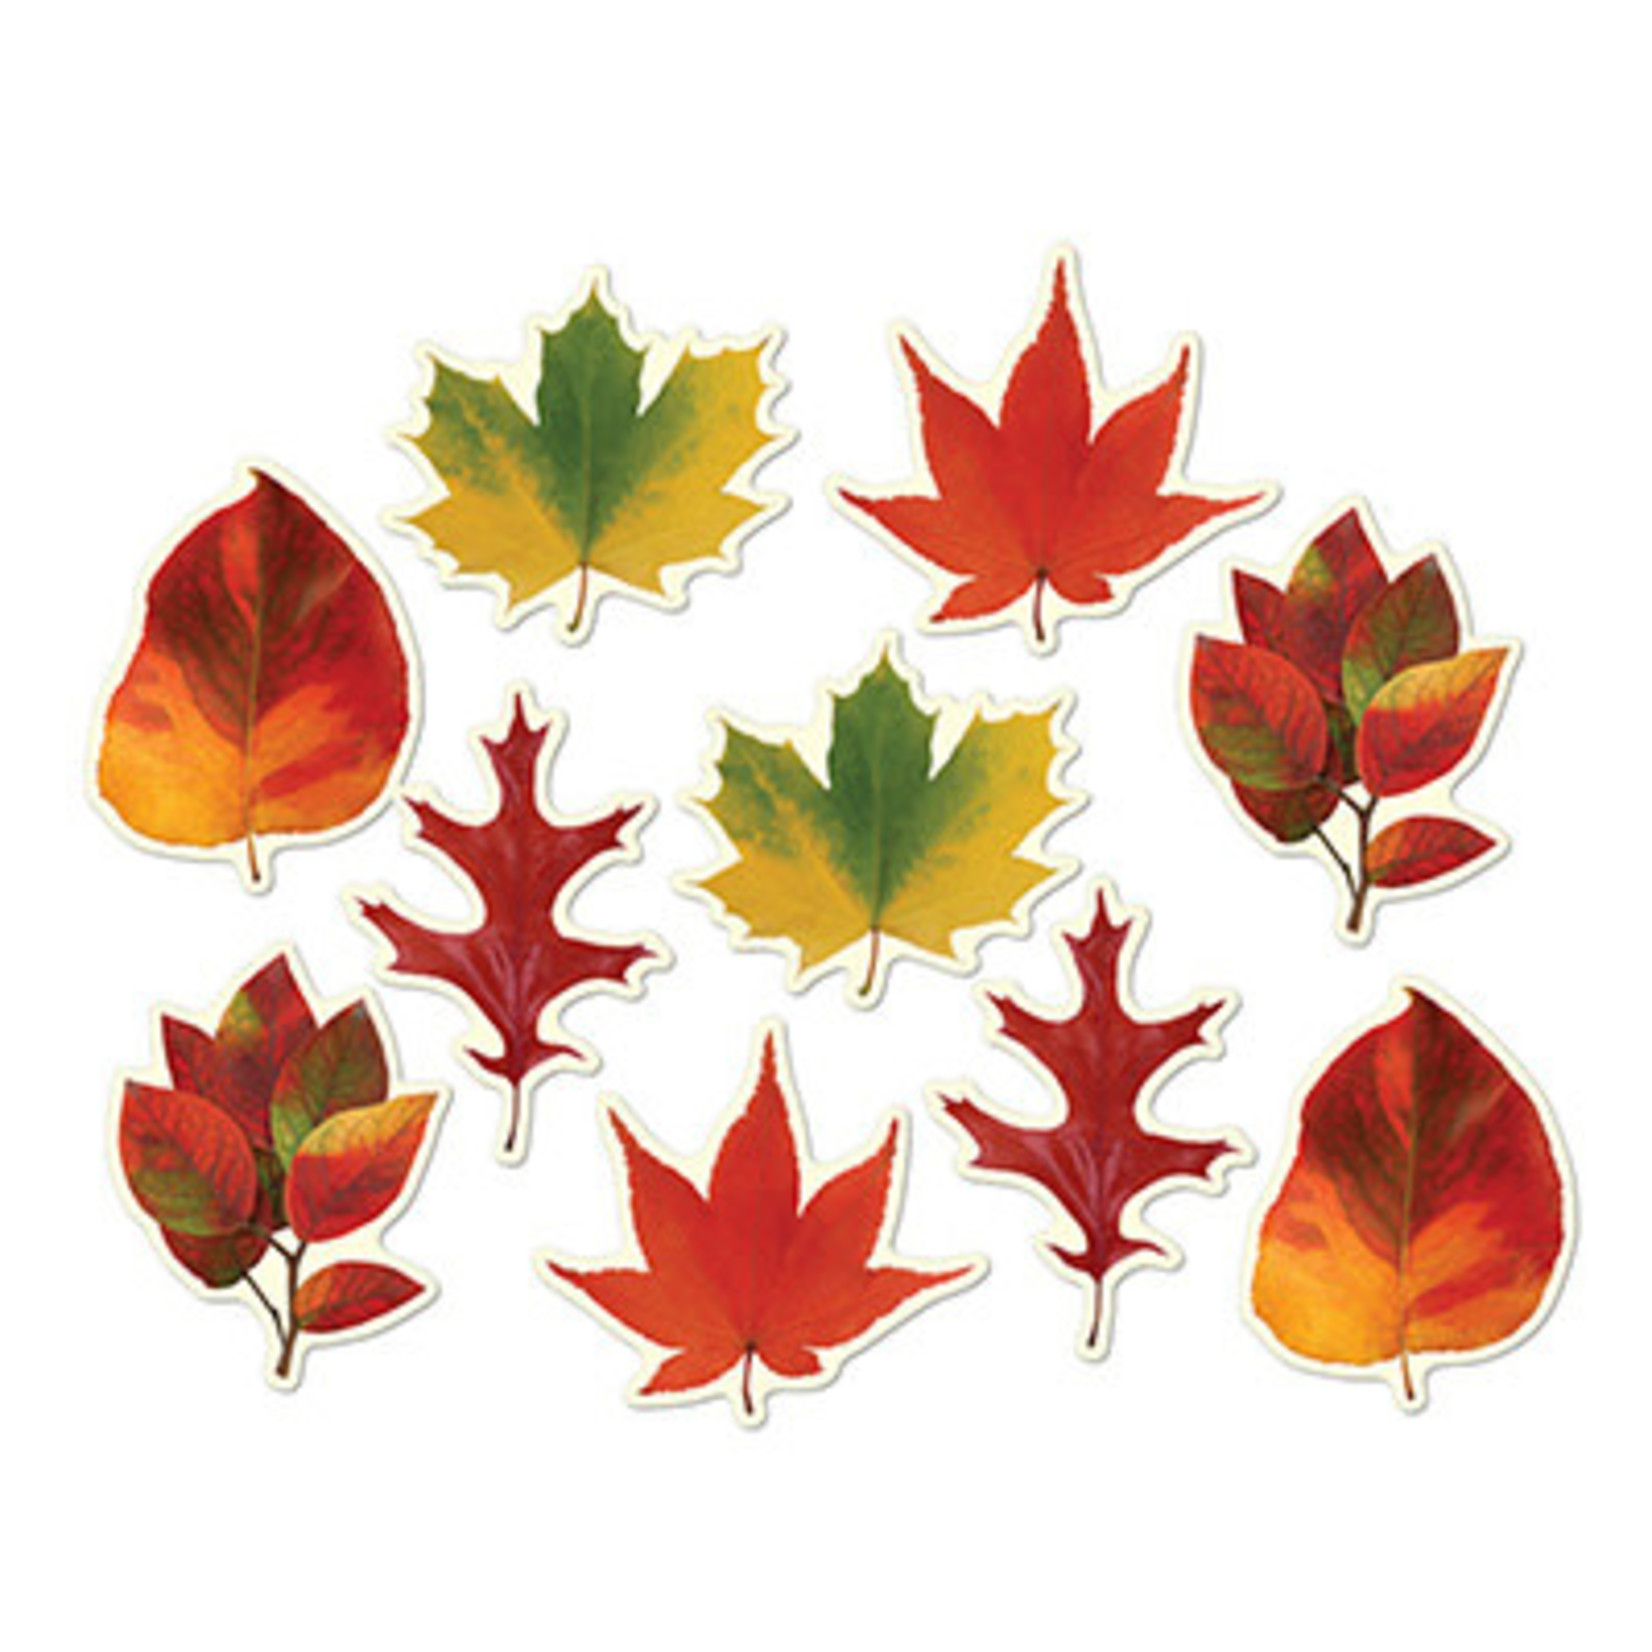 Beistle 4.5" Fall Leaf Mini Cutouts - 10ct.